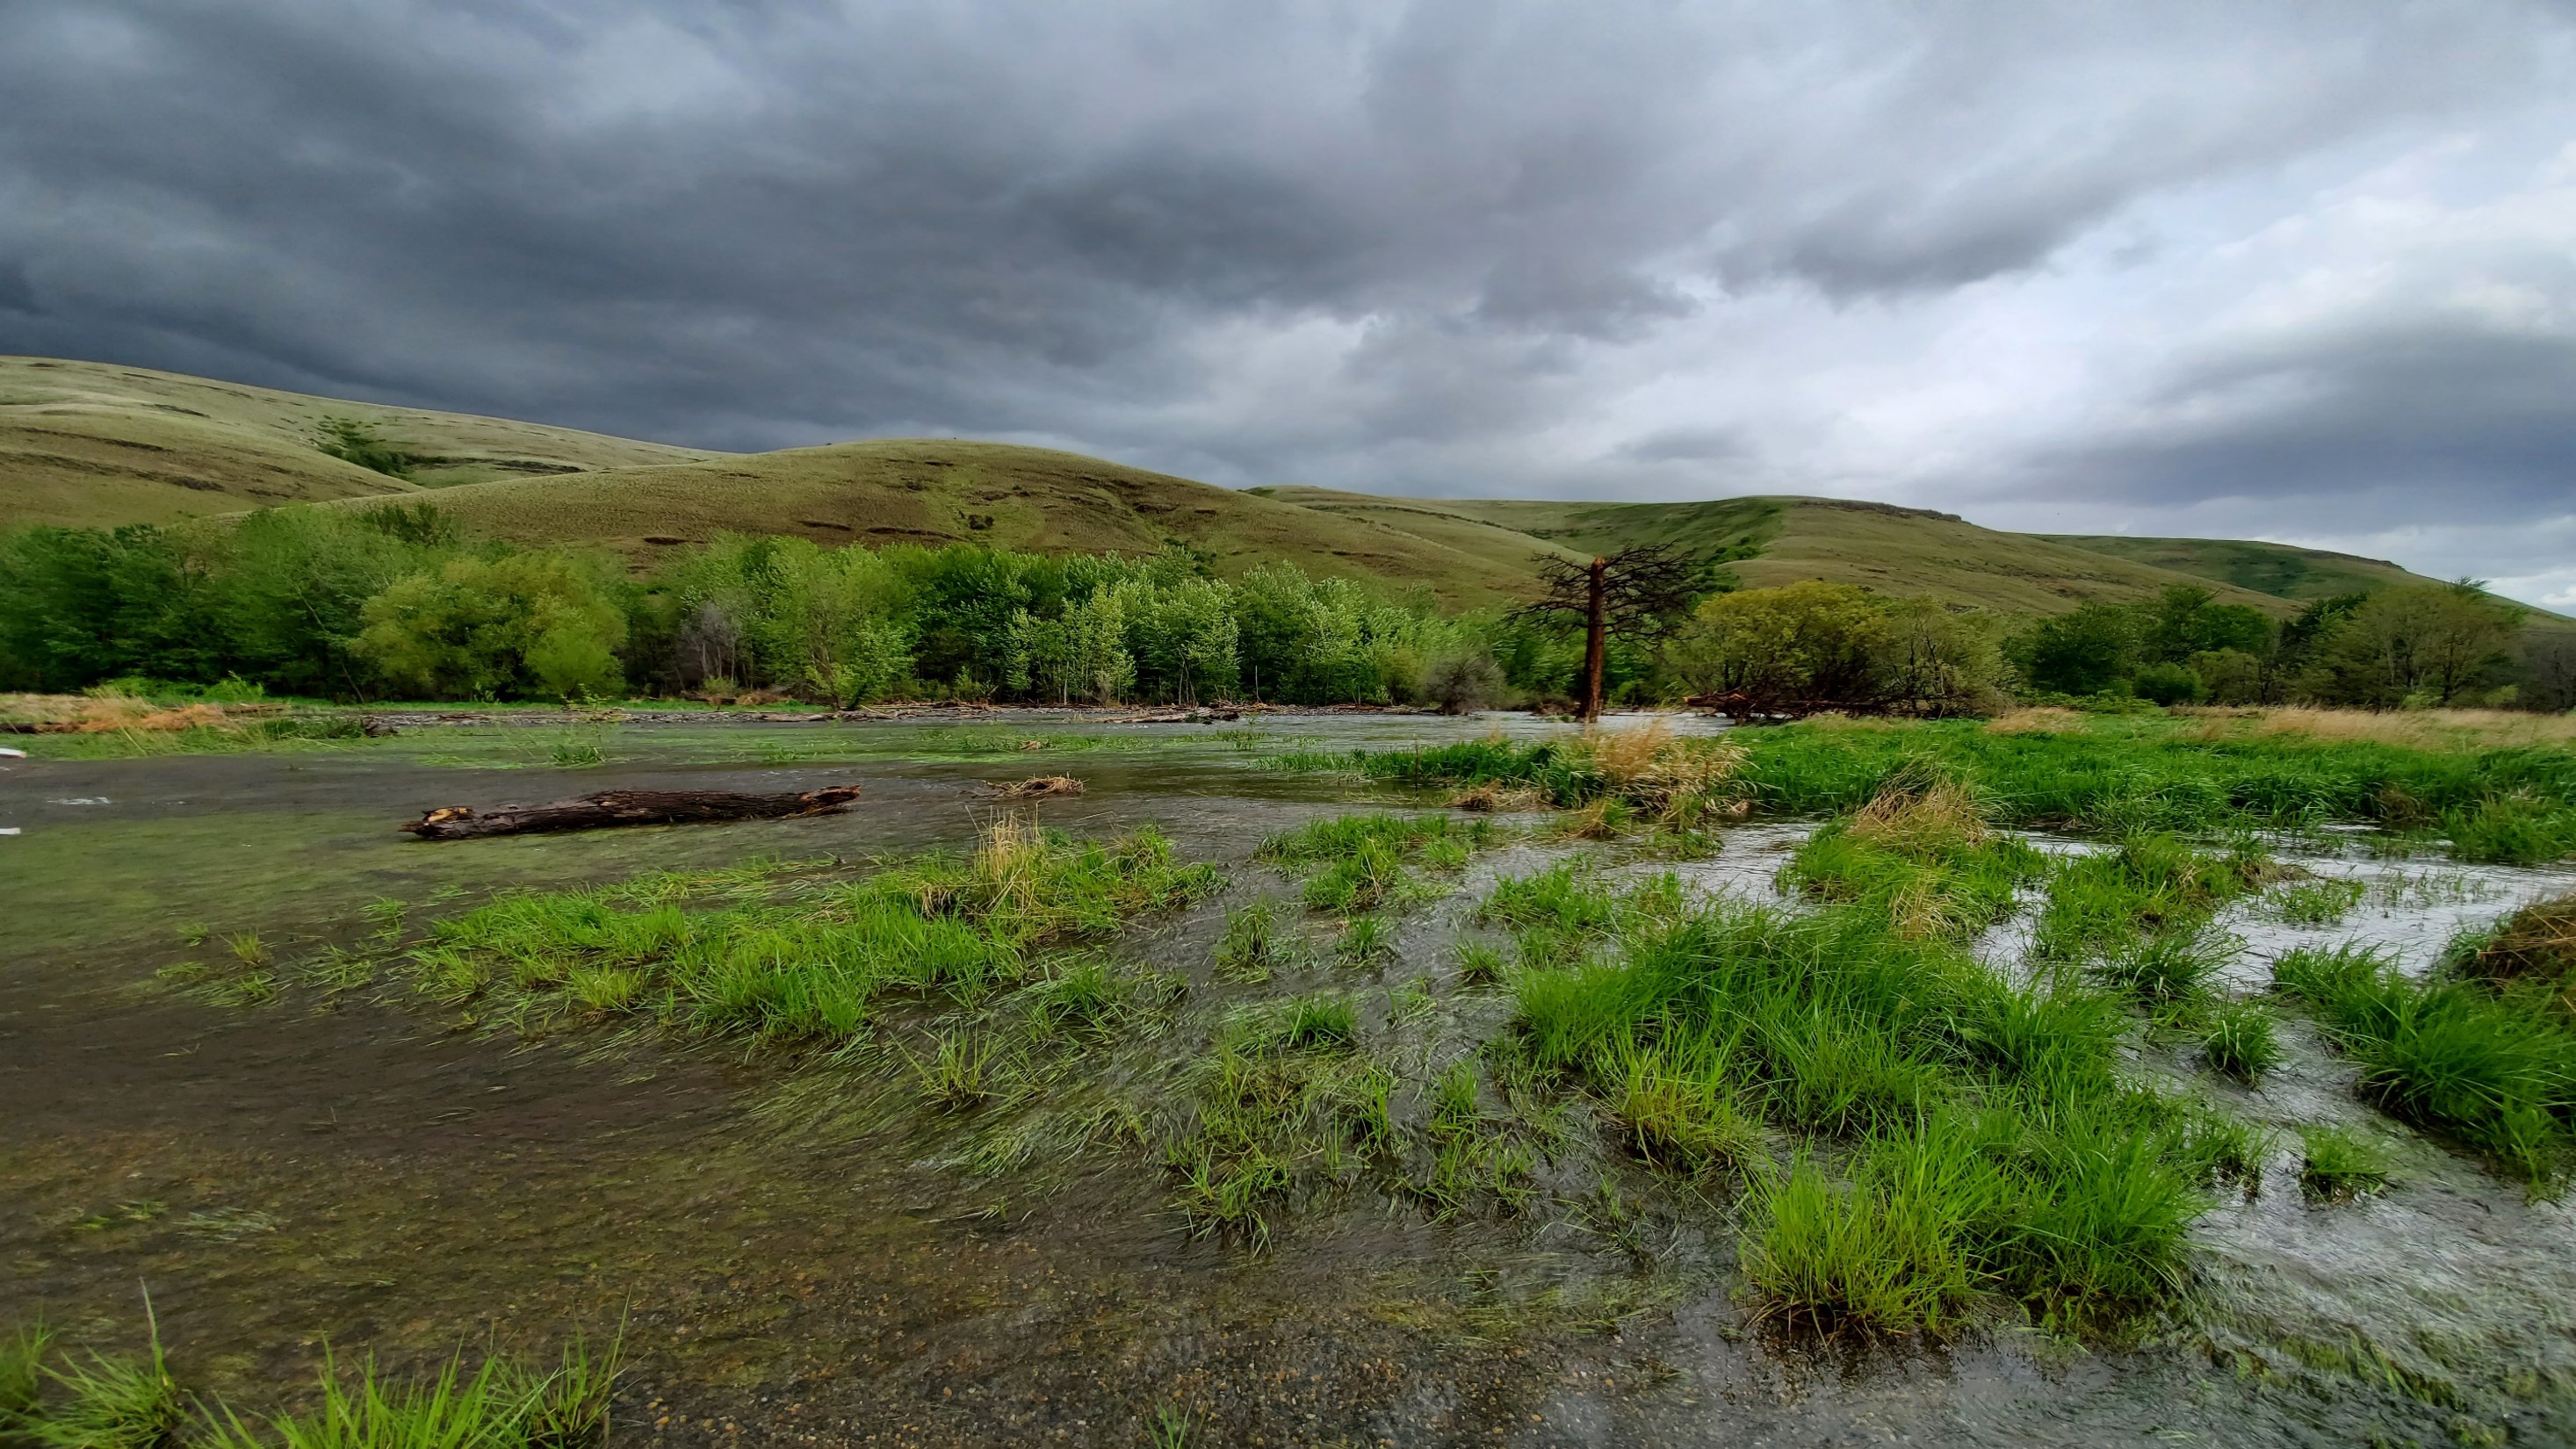 The Green River Basin: A Natural History